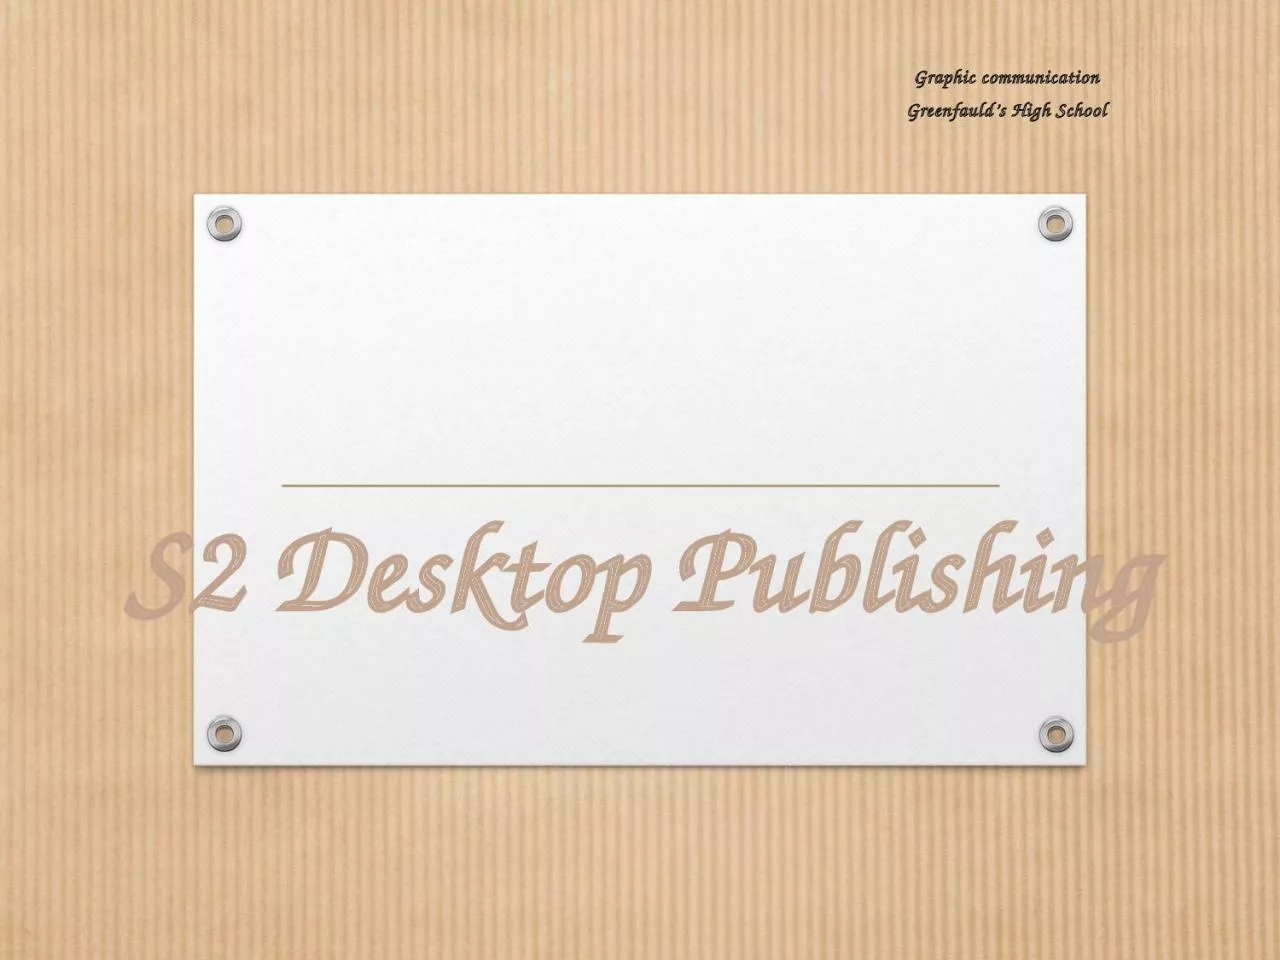 S2 Desktop Publishing Graphic communication